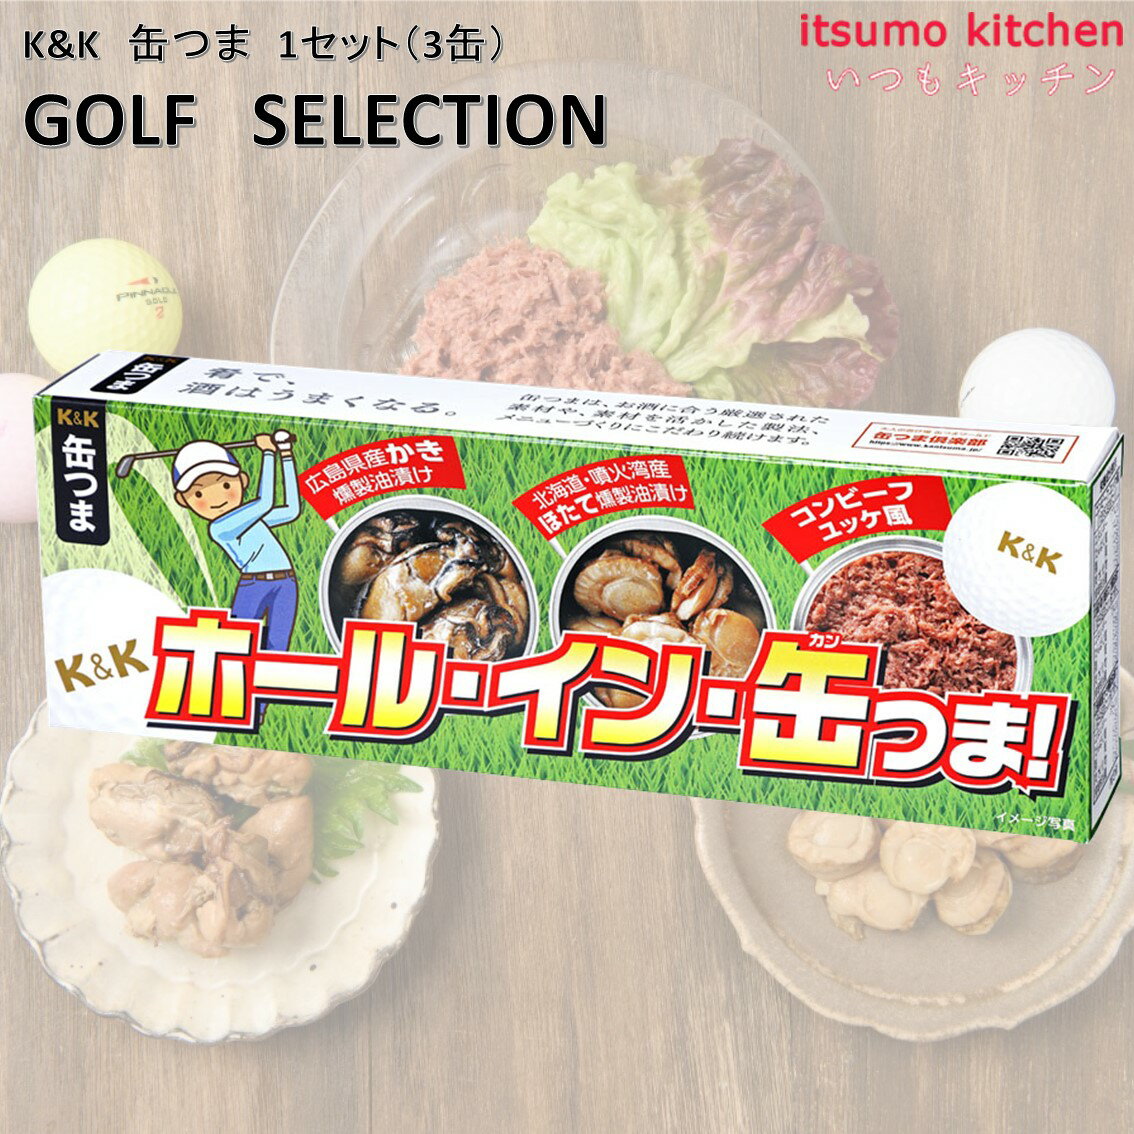 K&K 缶つま GOLF SELECTION 1セット(3缶) 国分グループ本社 ビール 缶詰 ゴルフ